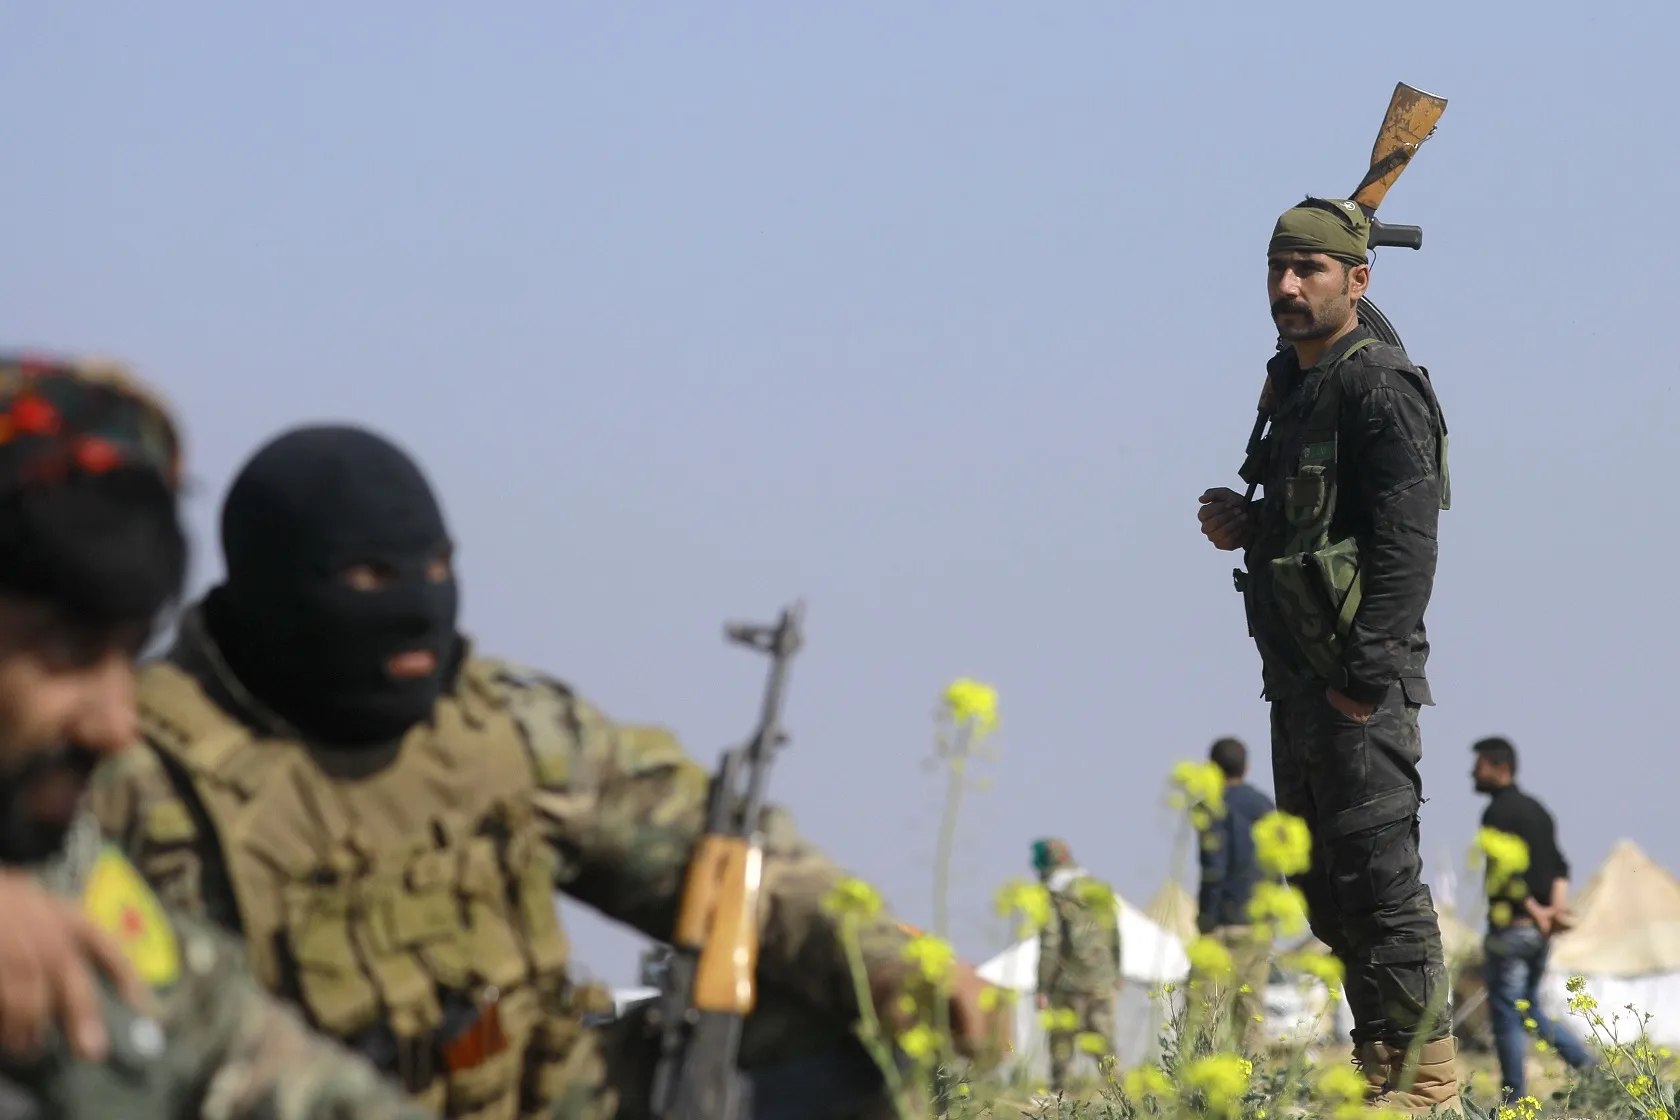 "الدفاع التركية" تُعلن تحييد 5 عناصر من تنظيم "ب ك ك" شمال شرقي سوريا